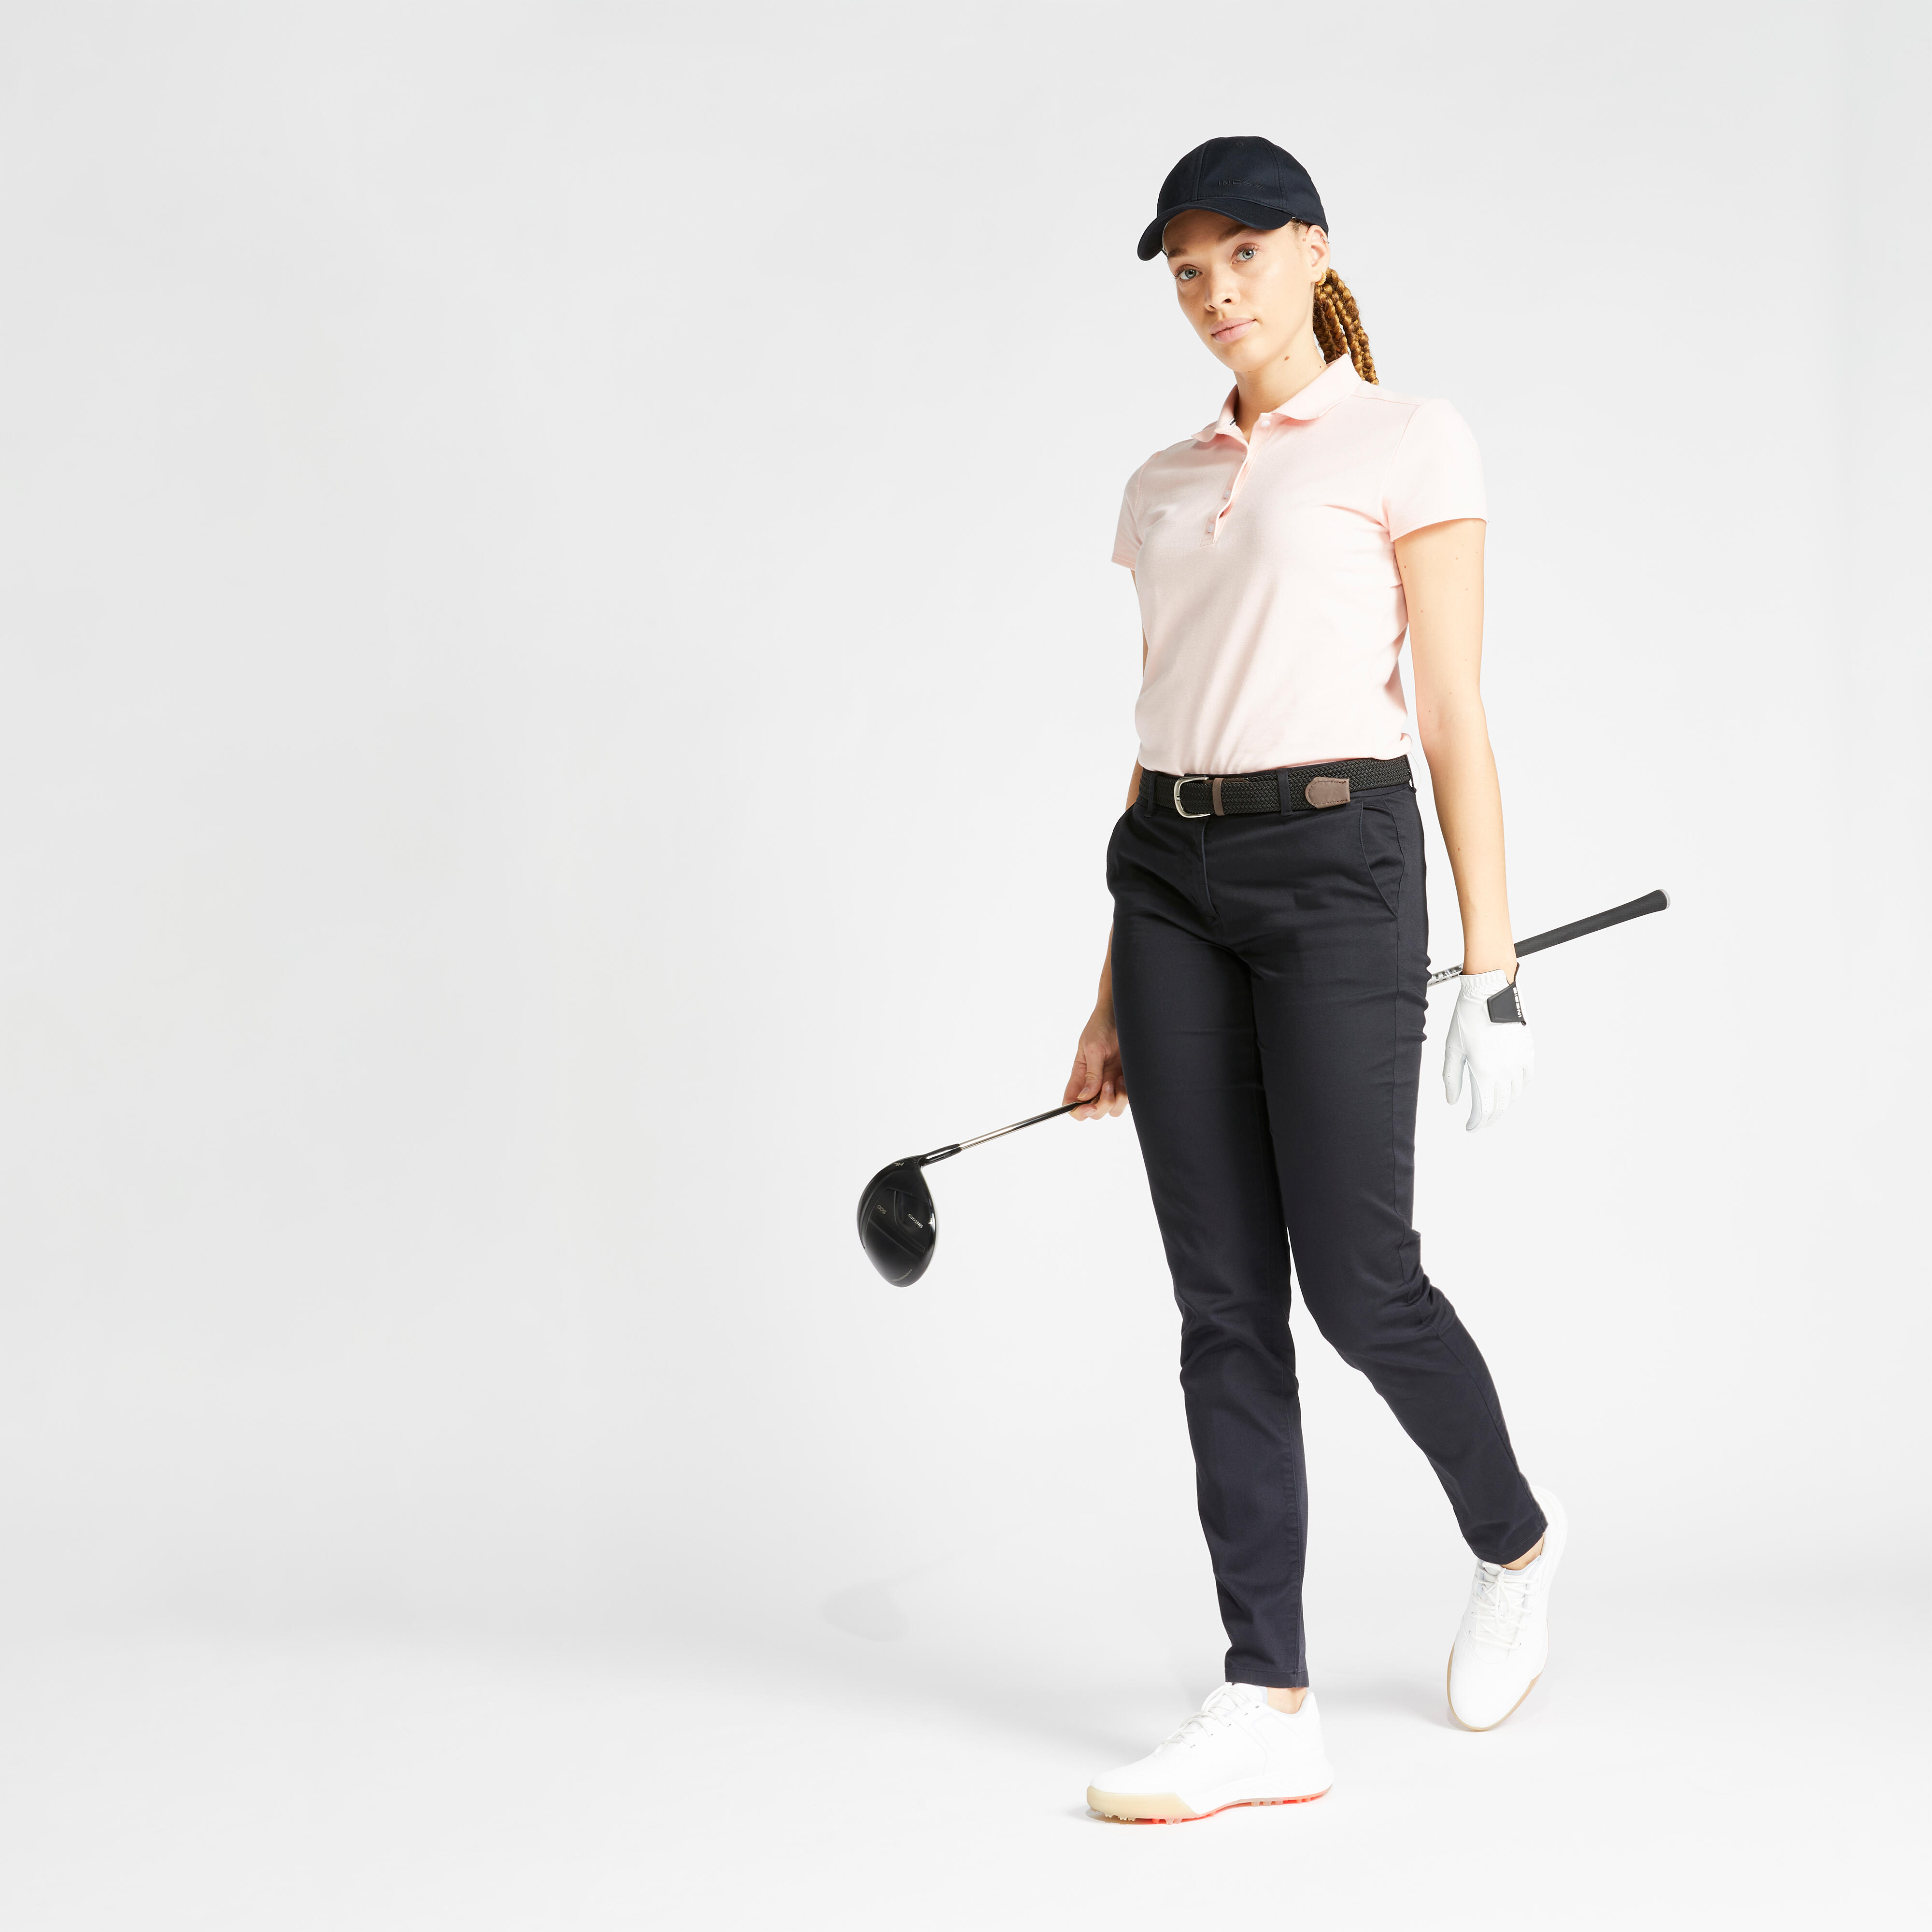 Women's Golf Pants - Amazon.com.au